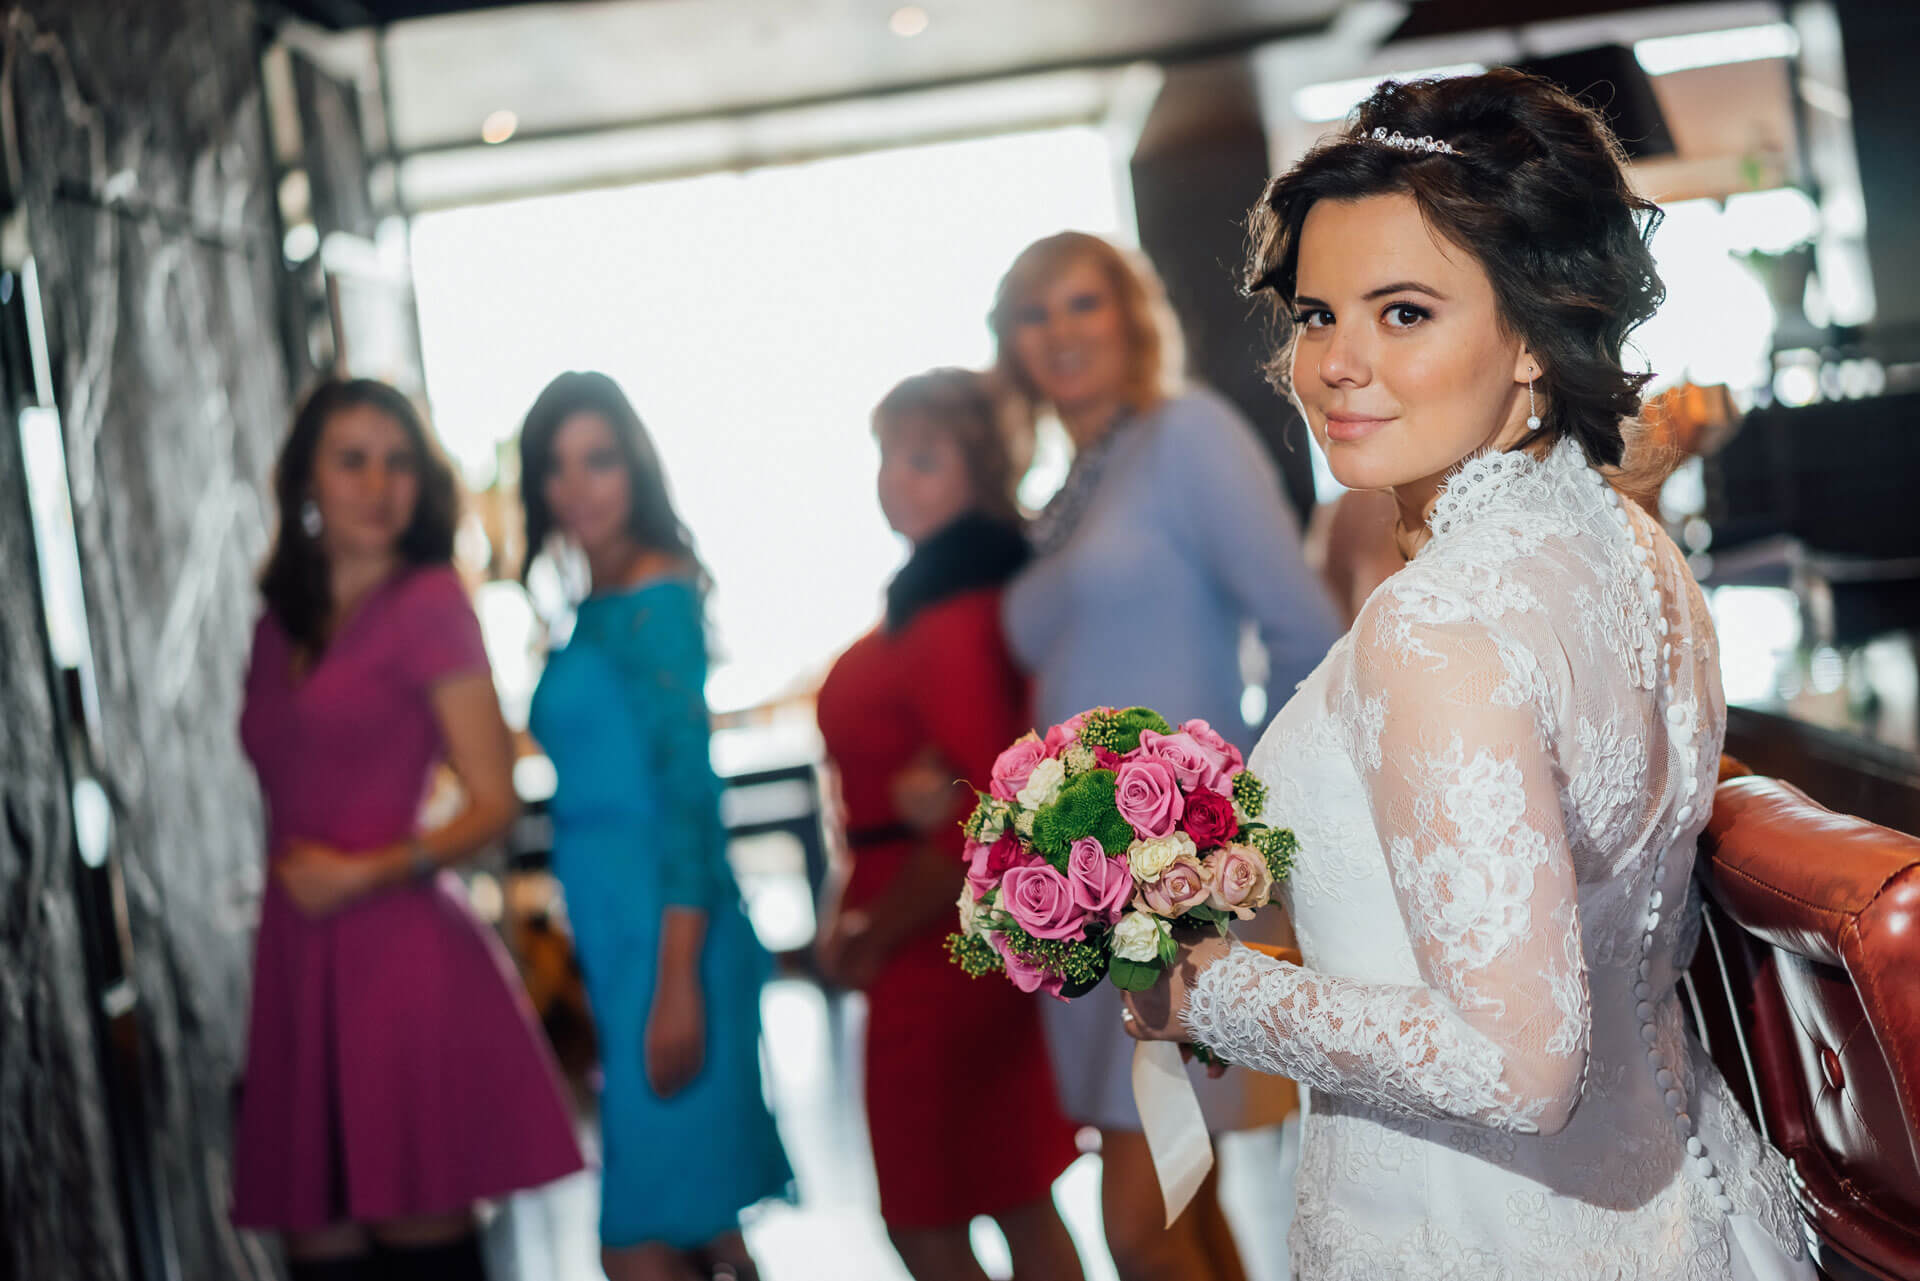 Свадебная фотосессия в Краснодаре, фотограф на свадьбу Краснодар.